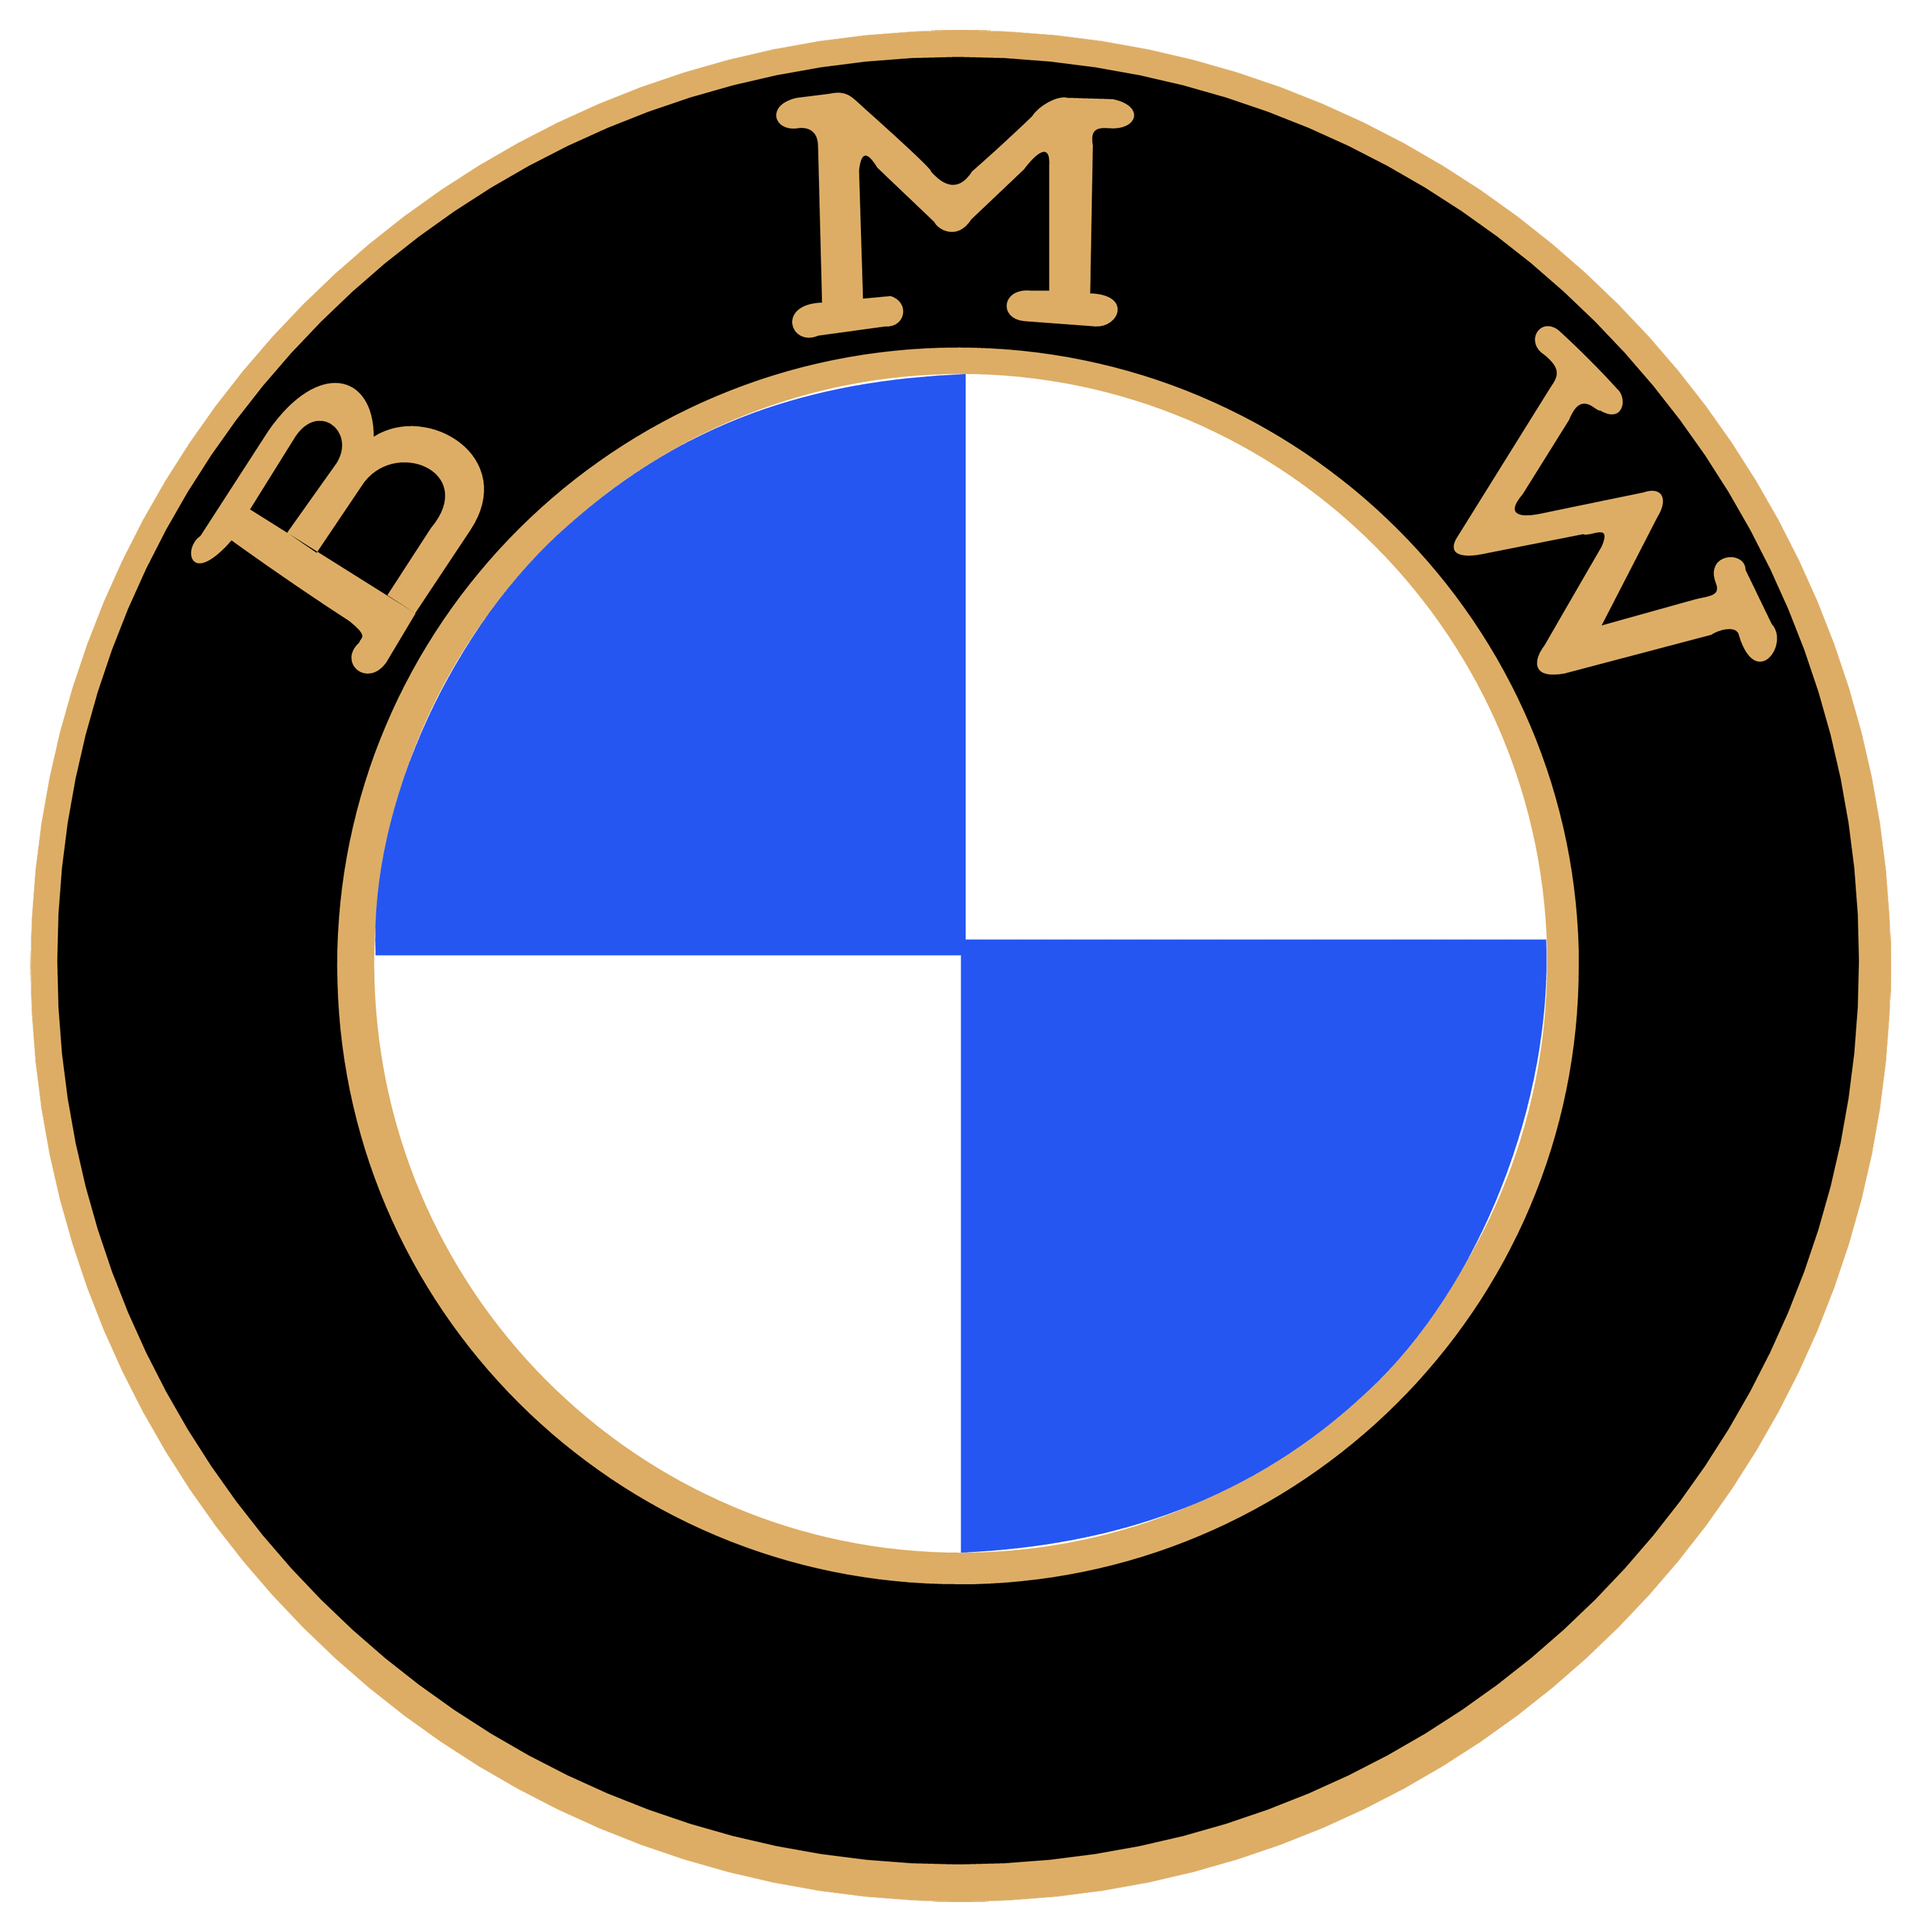 Bmw Wallpaper K Logo Transparent Free Imagesee